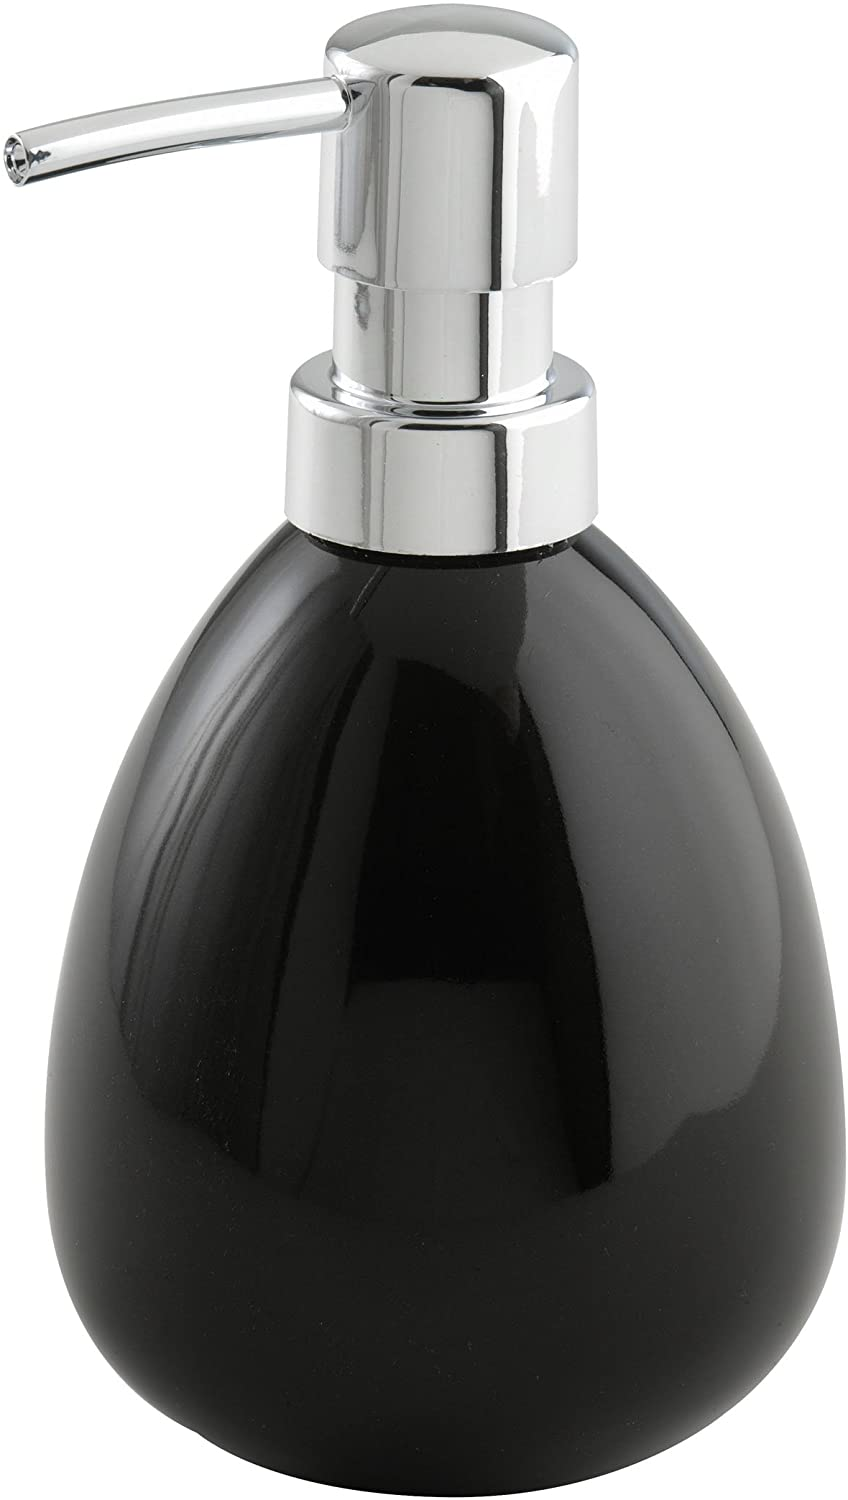 Seifenspender Polaris Black Keramik - Flüssigseifen-Spender, Spülmittel-Spender Fassungsvermögen: 0.39 l, Keramik, 9.5 x 16 x 9 cm, Schwarz